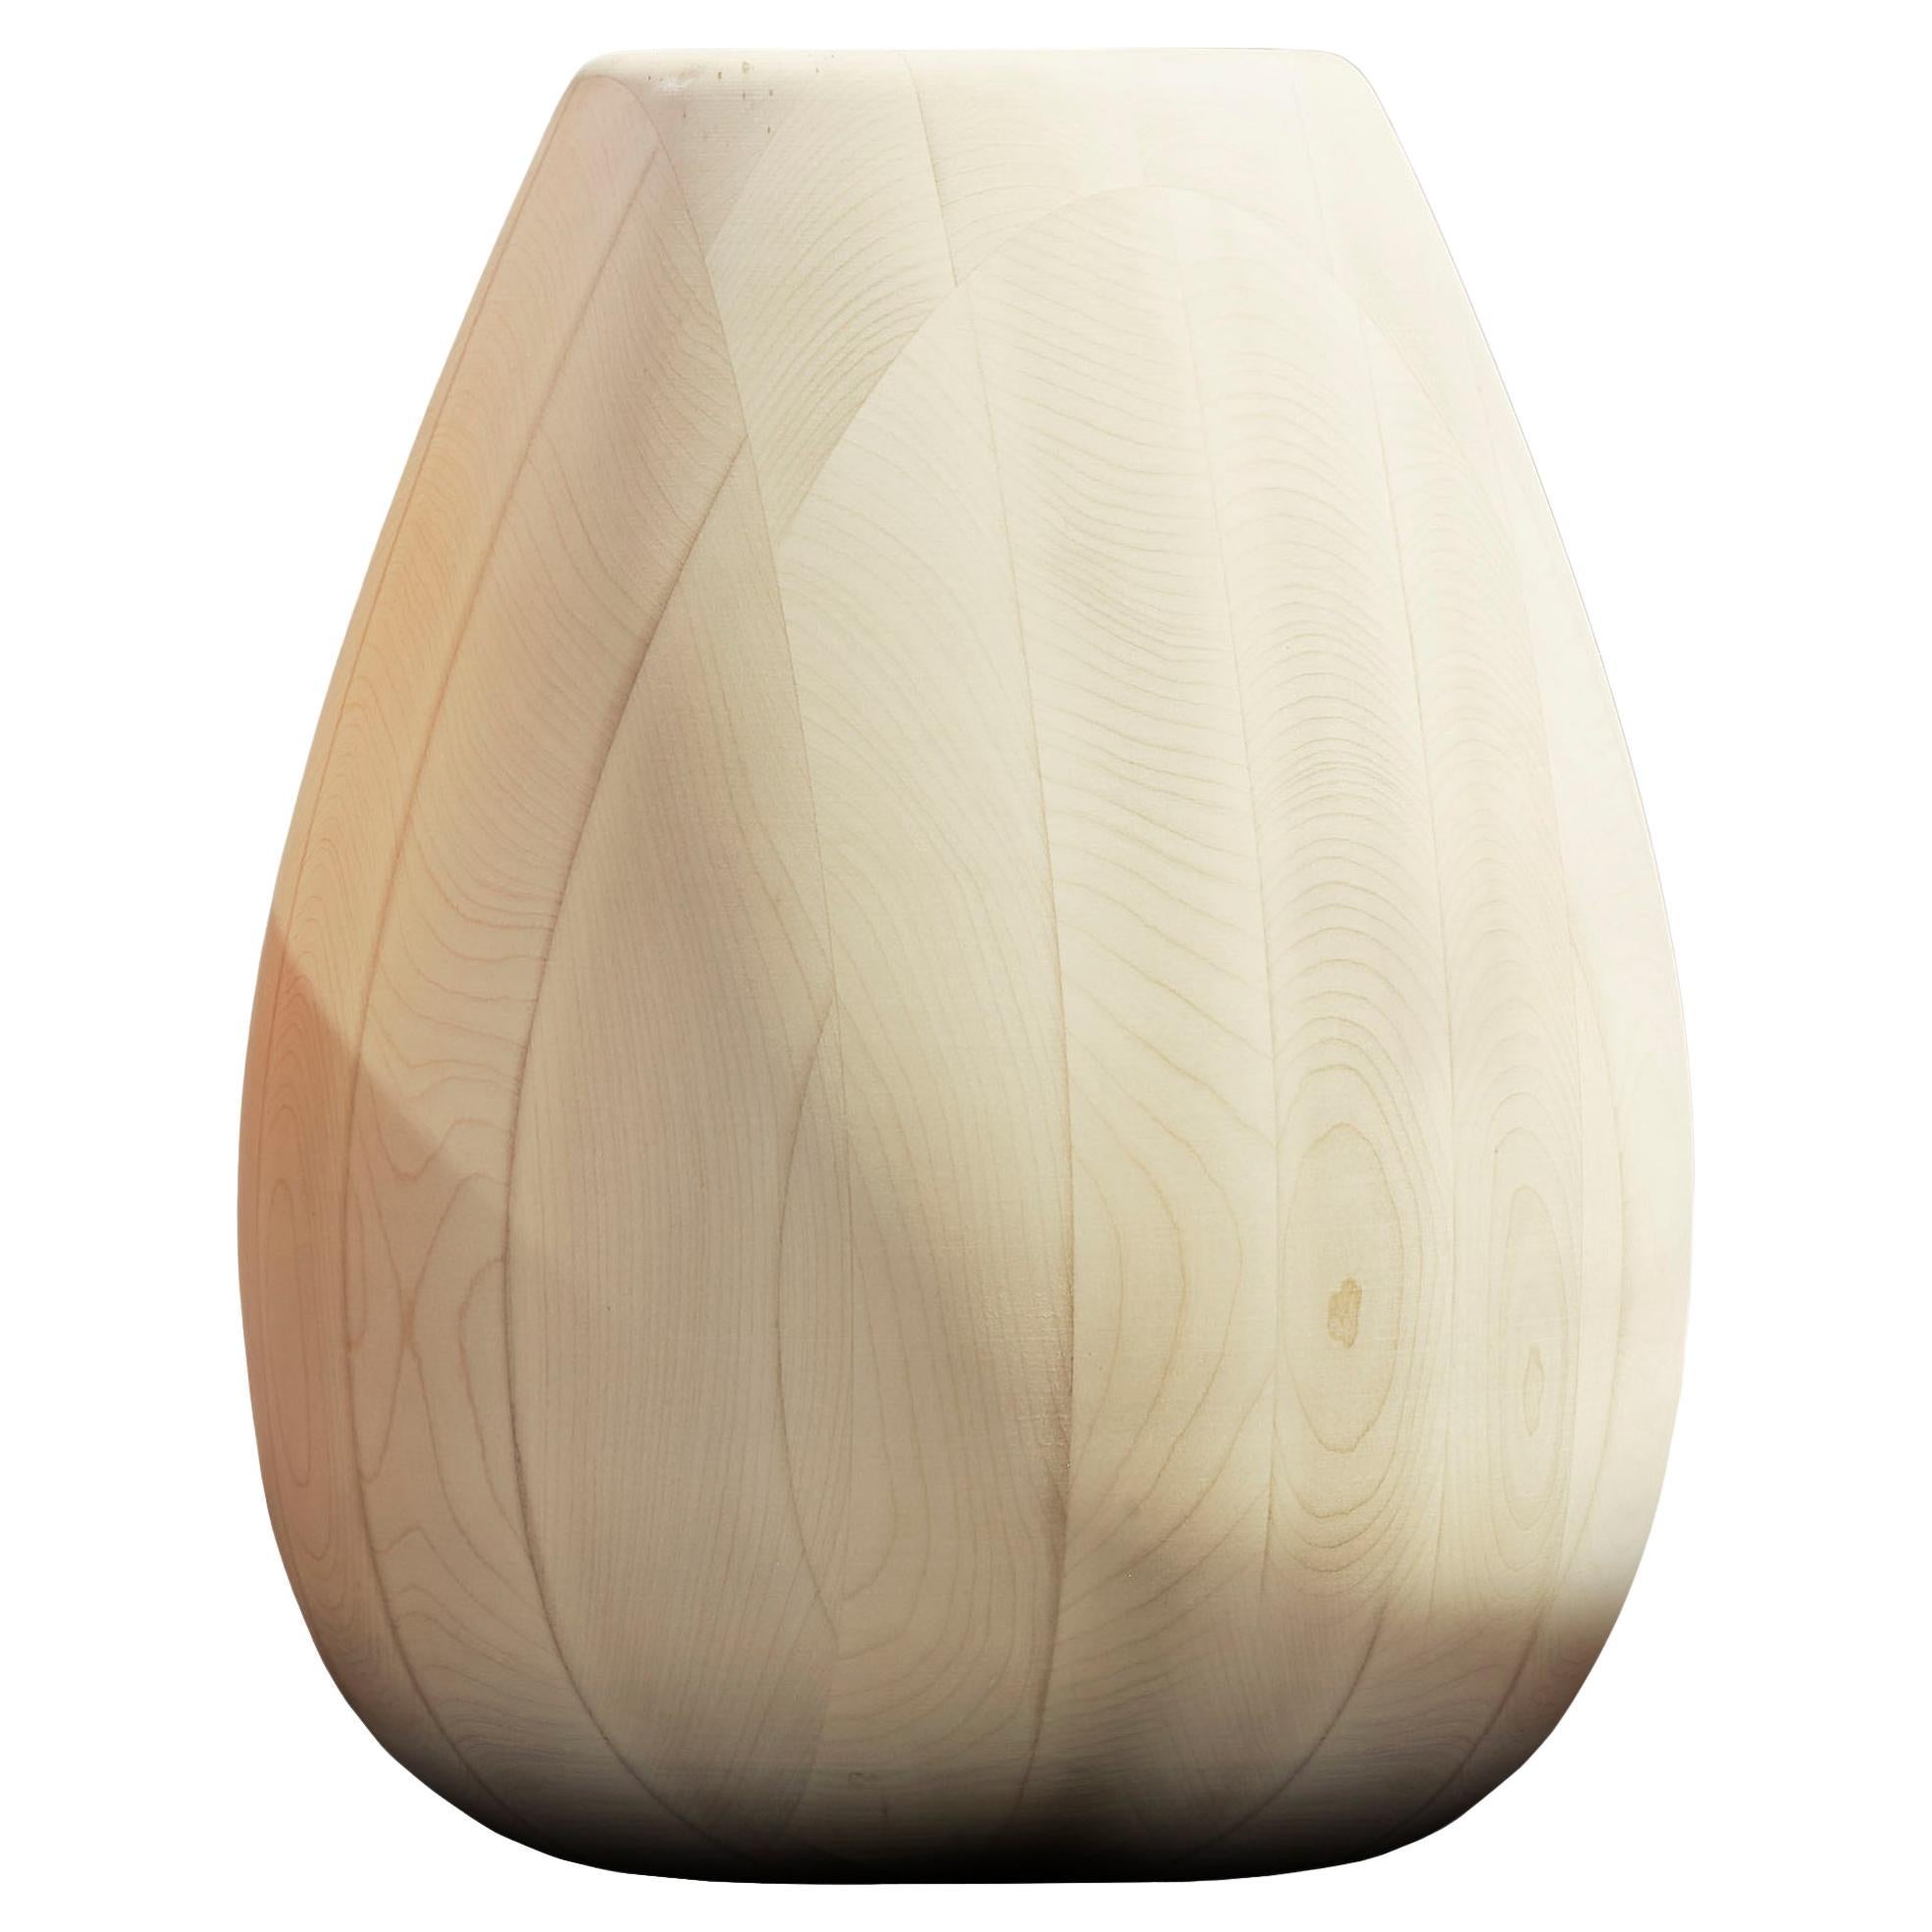 Maple Wood Vase h50 design Franco Albini - edit b Officina della Scala